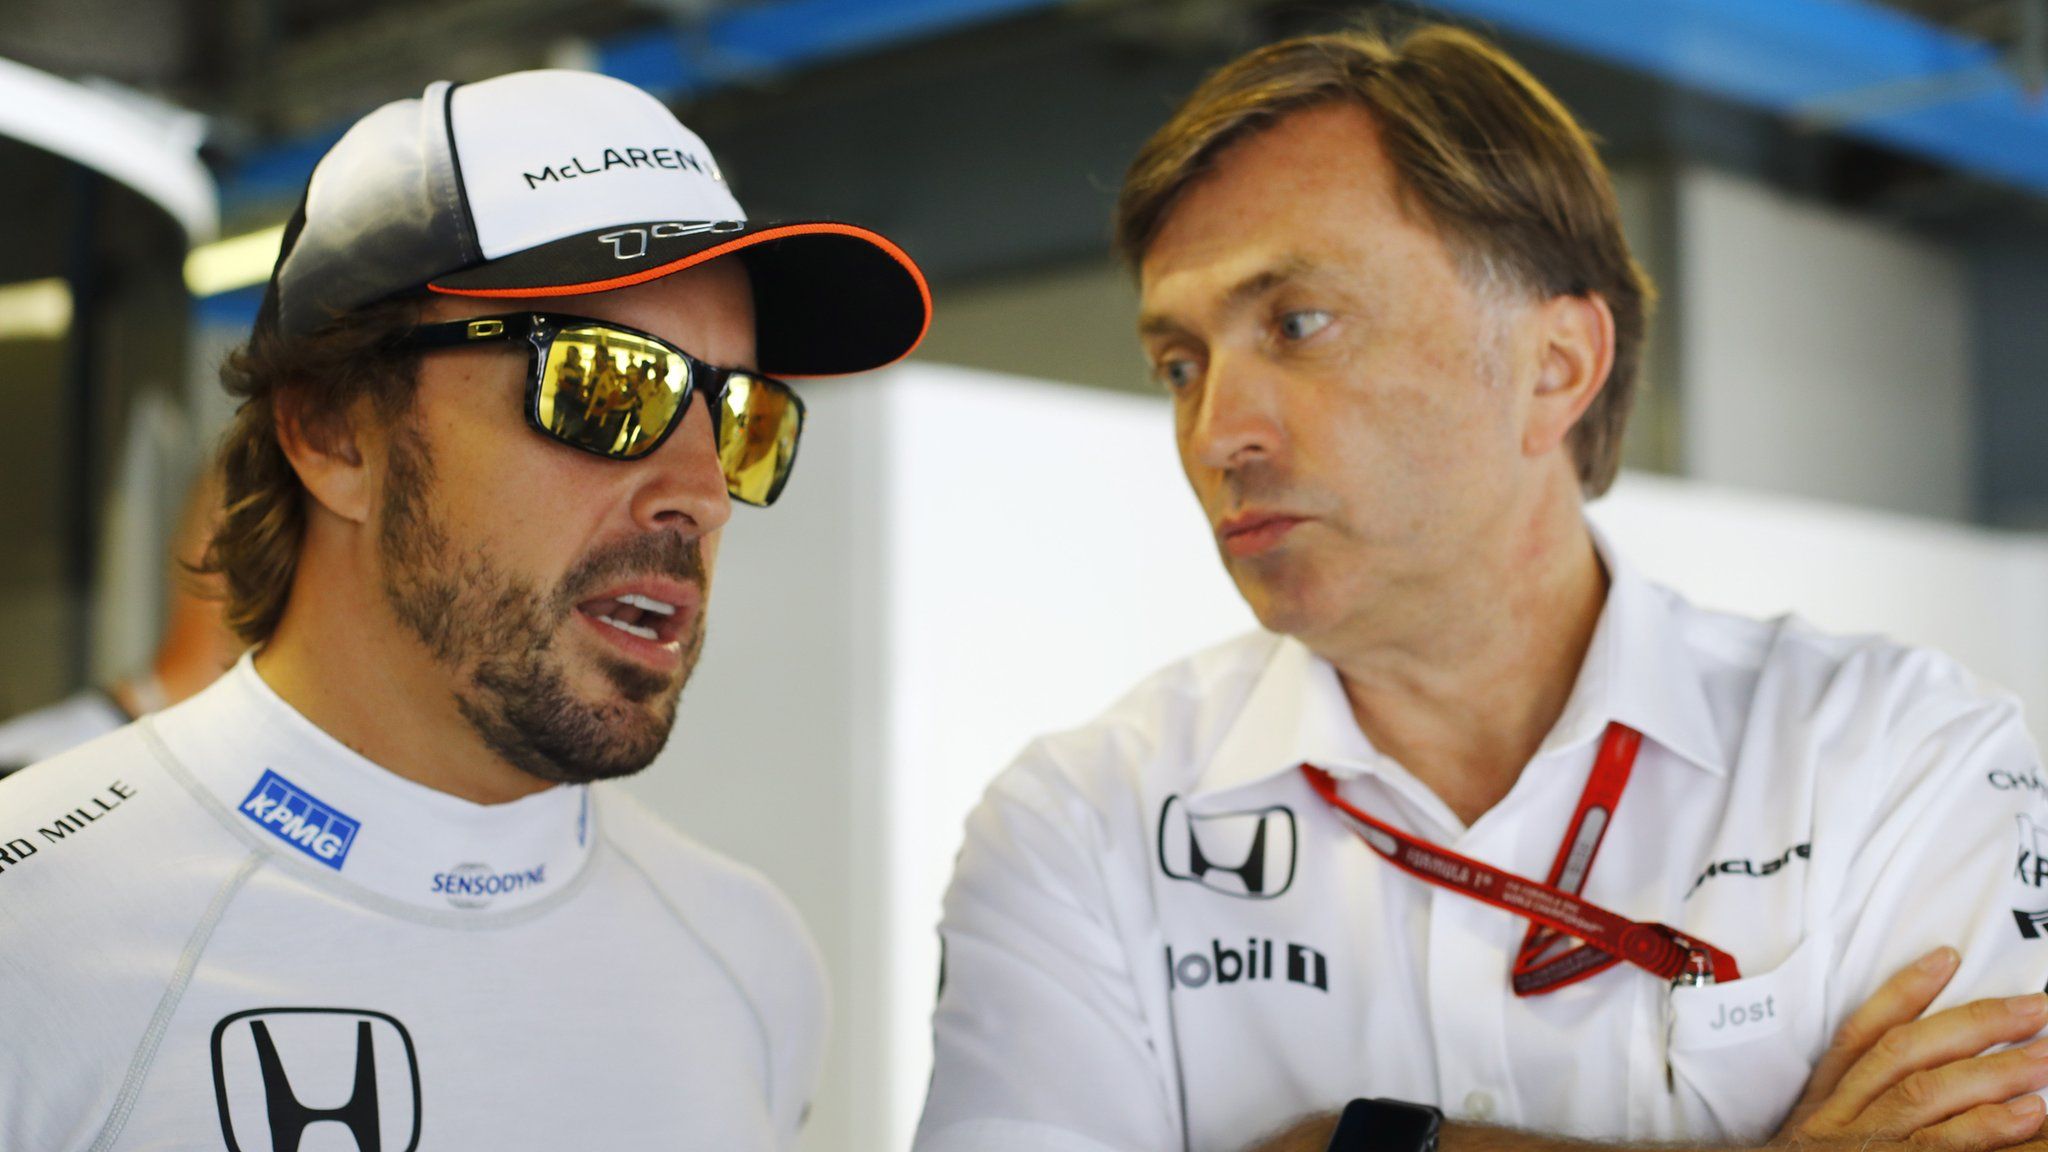 Jost Capito, a colloquio con Fernando Alonso (foto da: 15minutenews.com)